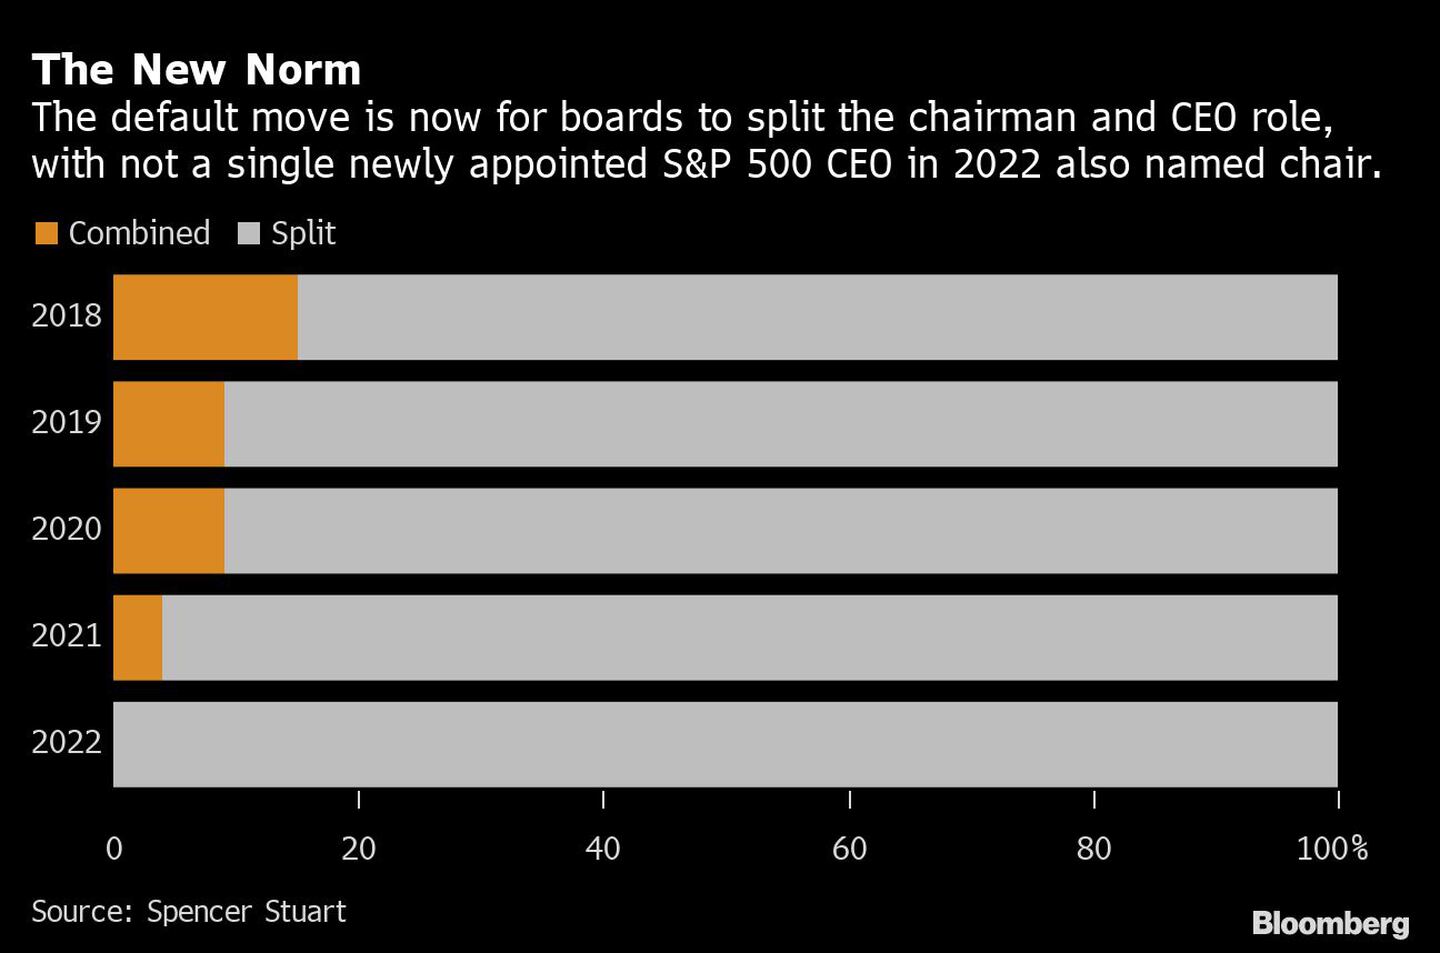  Ahora, por defecto, los consejos de administración dividen las funciones de presidente y CEO y ni uno solo de los nuevos CEO del S&P 500 nombrados en 2022 ha sido nombrado también presidente.dfd